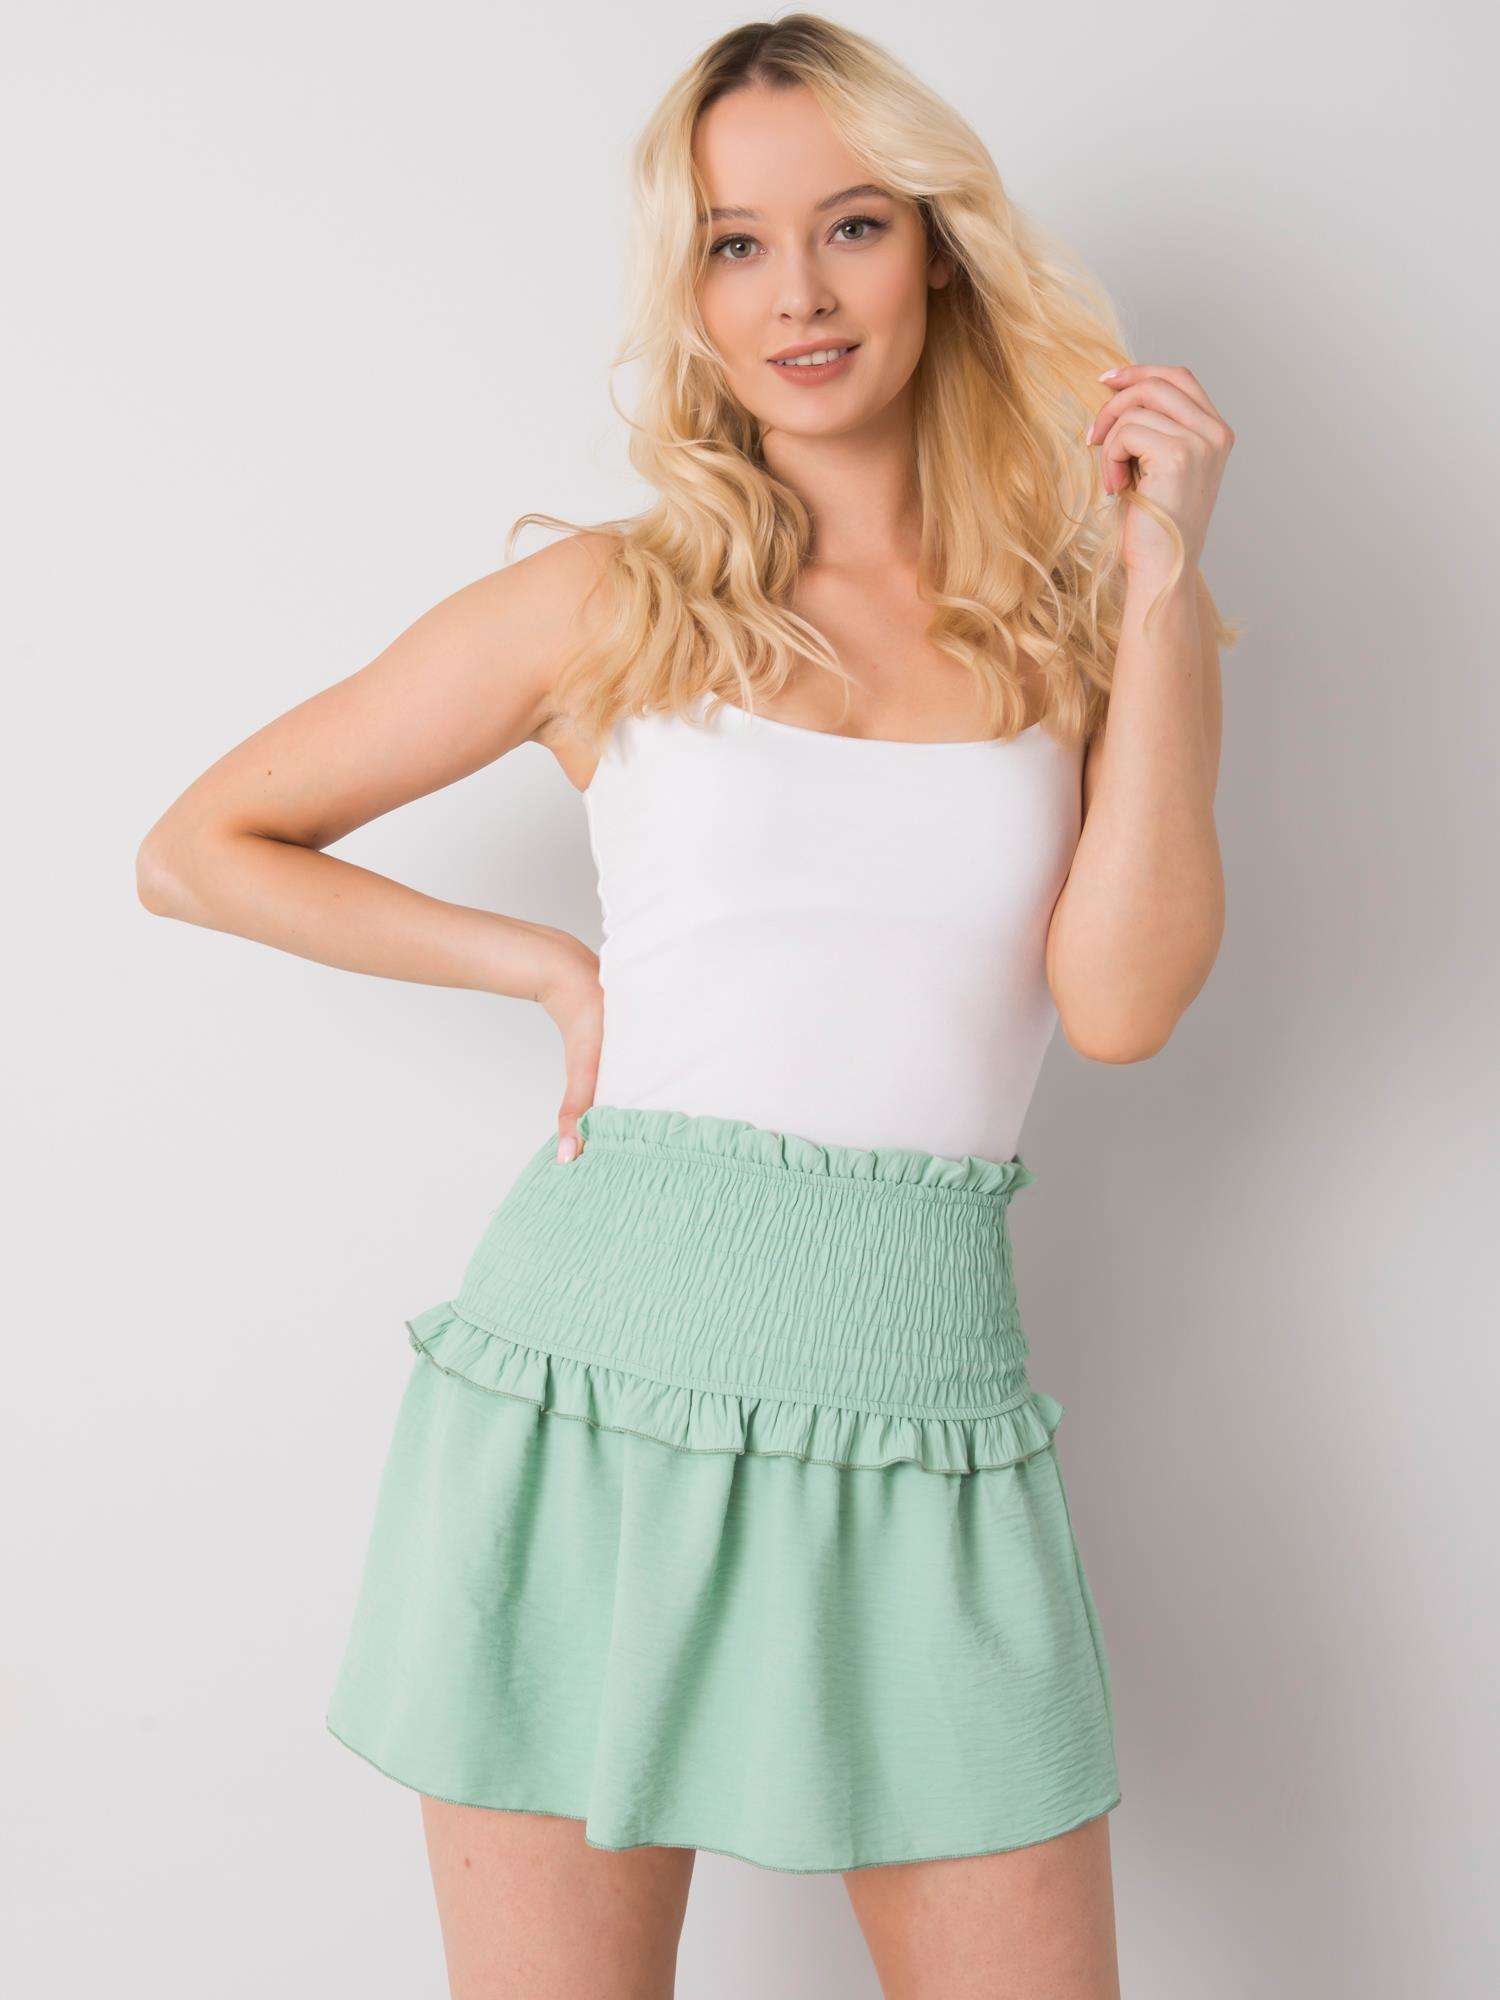 Green skirt Och Bella BI-26716. R26